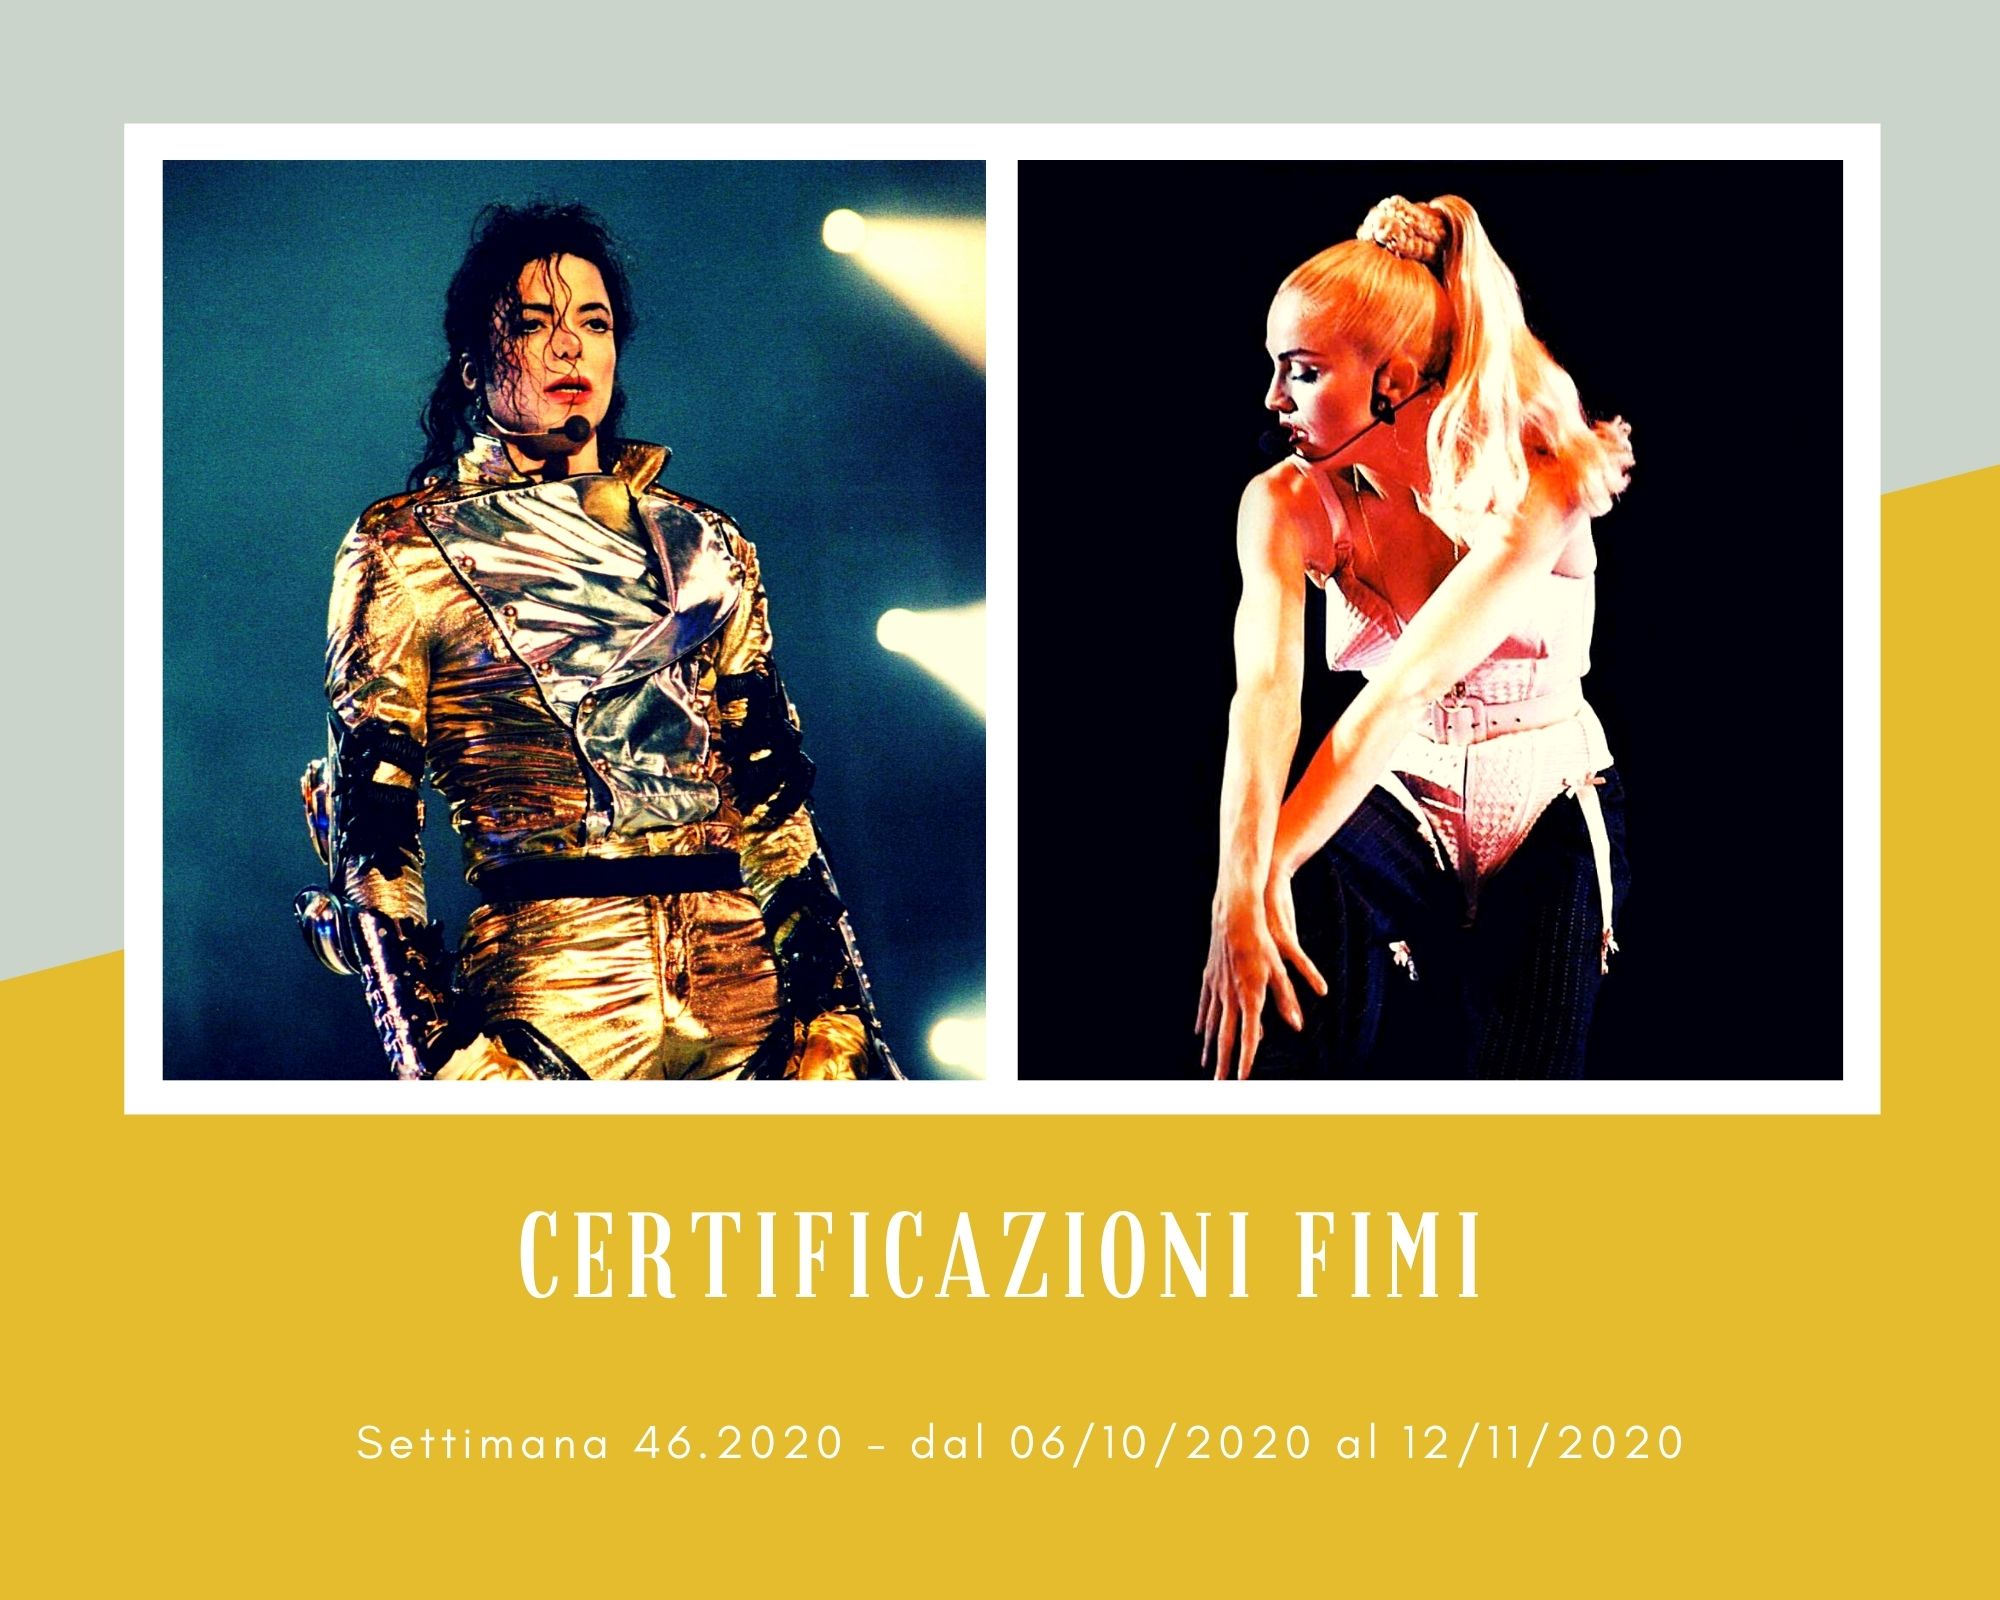 Certificazioni FIMI, week 46. Con Michael Jackson e Madonna si ritorna al favoloso pop